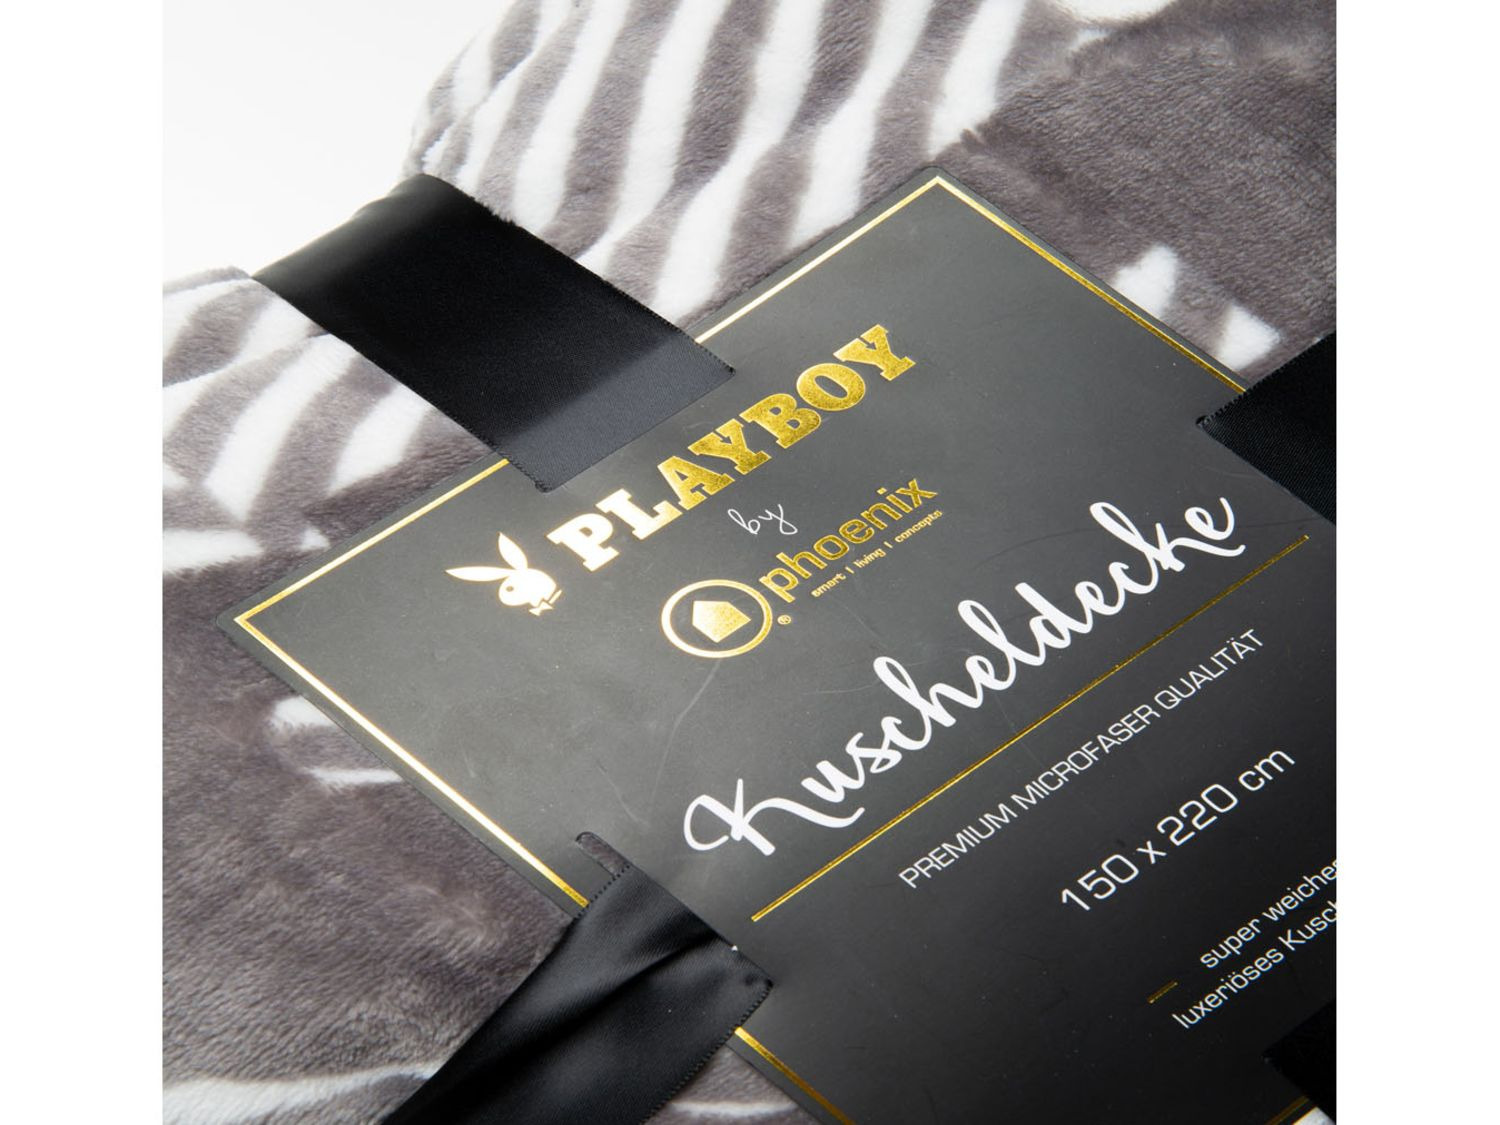 Kuscheldecke "JACKIE" weiche Decke luxuriöse Premium Grau bedruckt PLAYBOY 